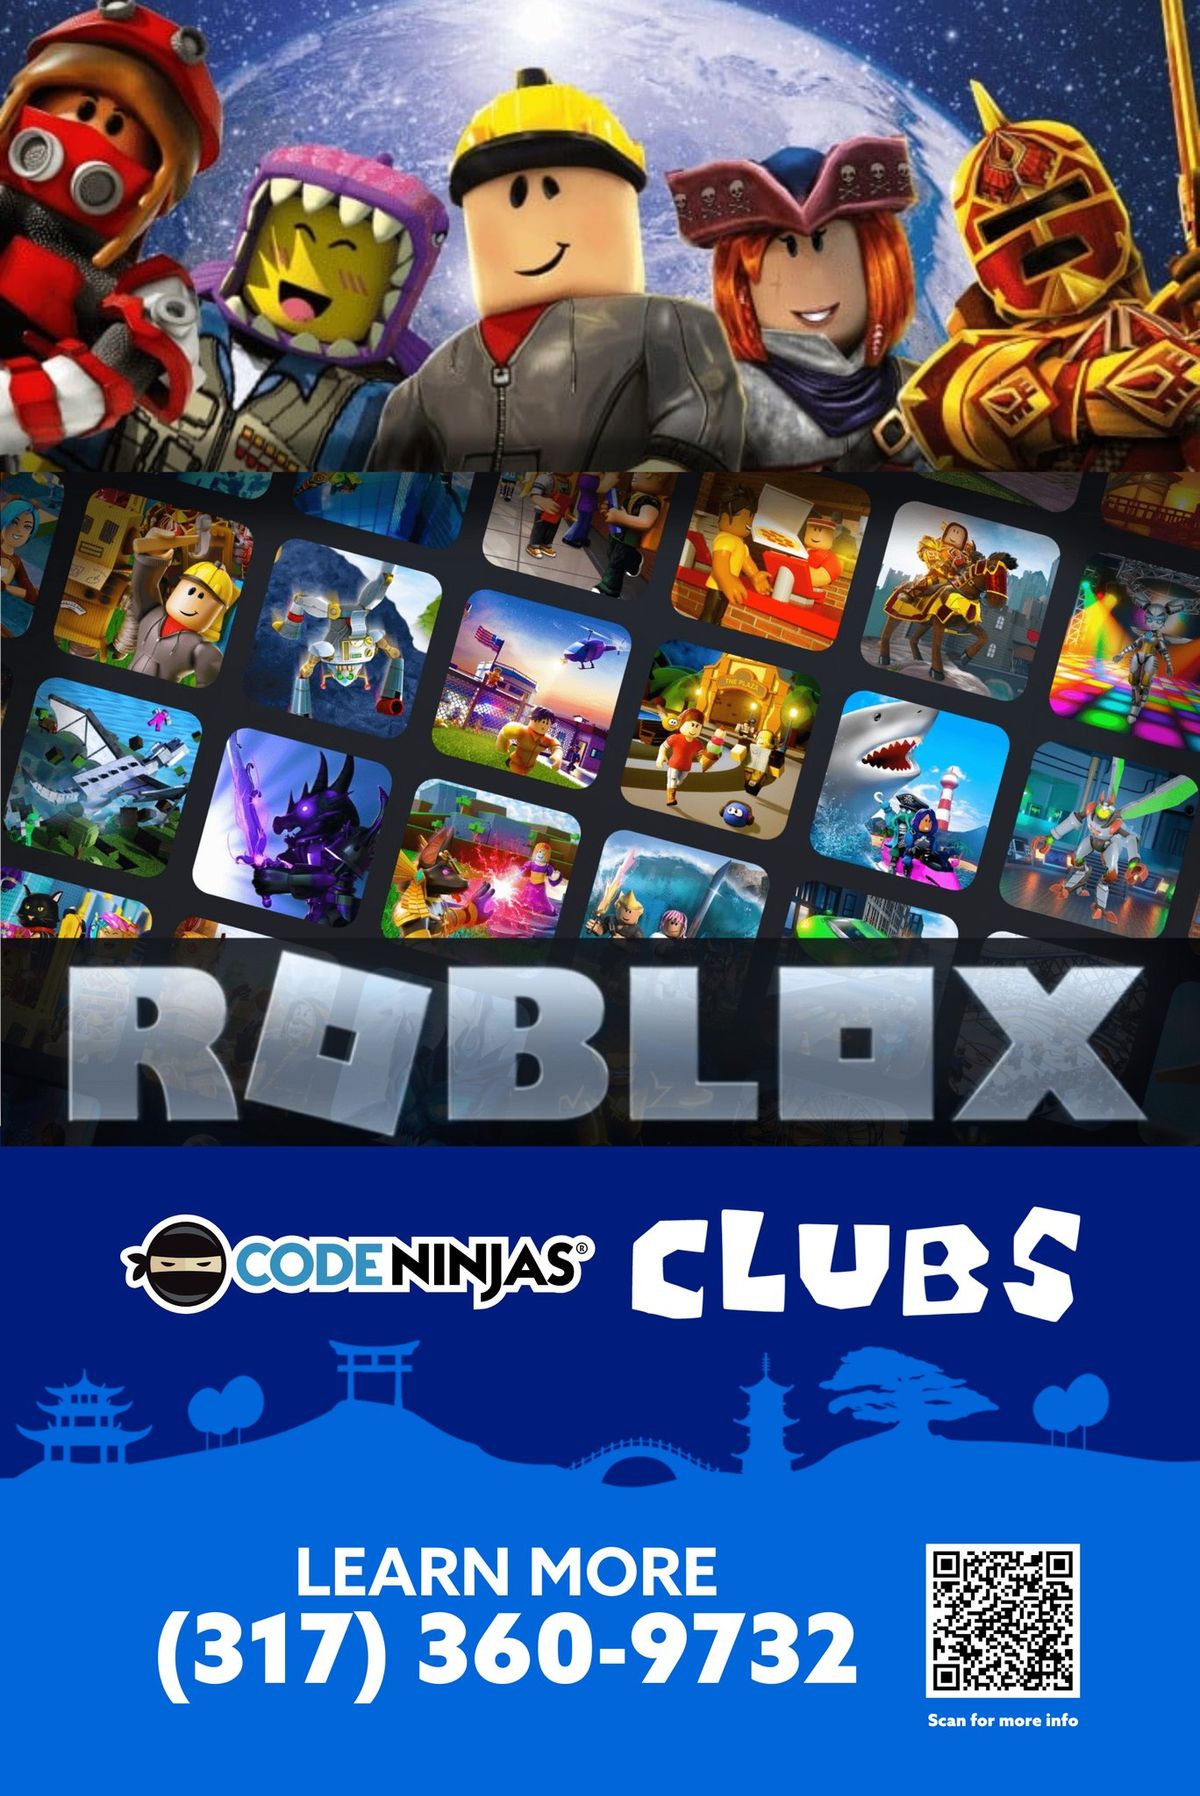 Code Ninjas CLUBS!